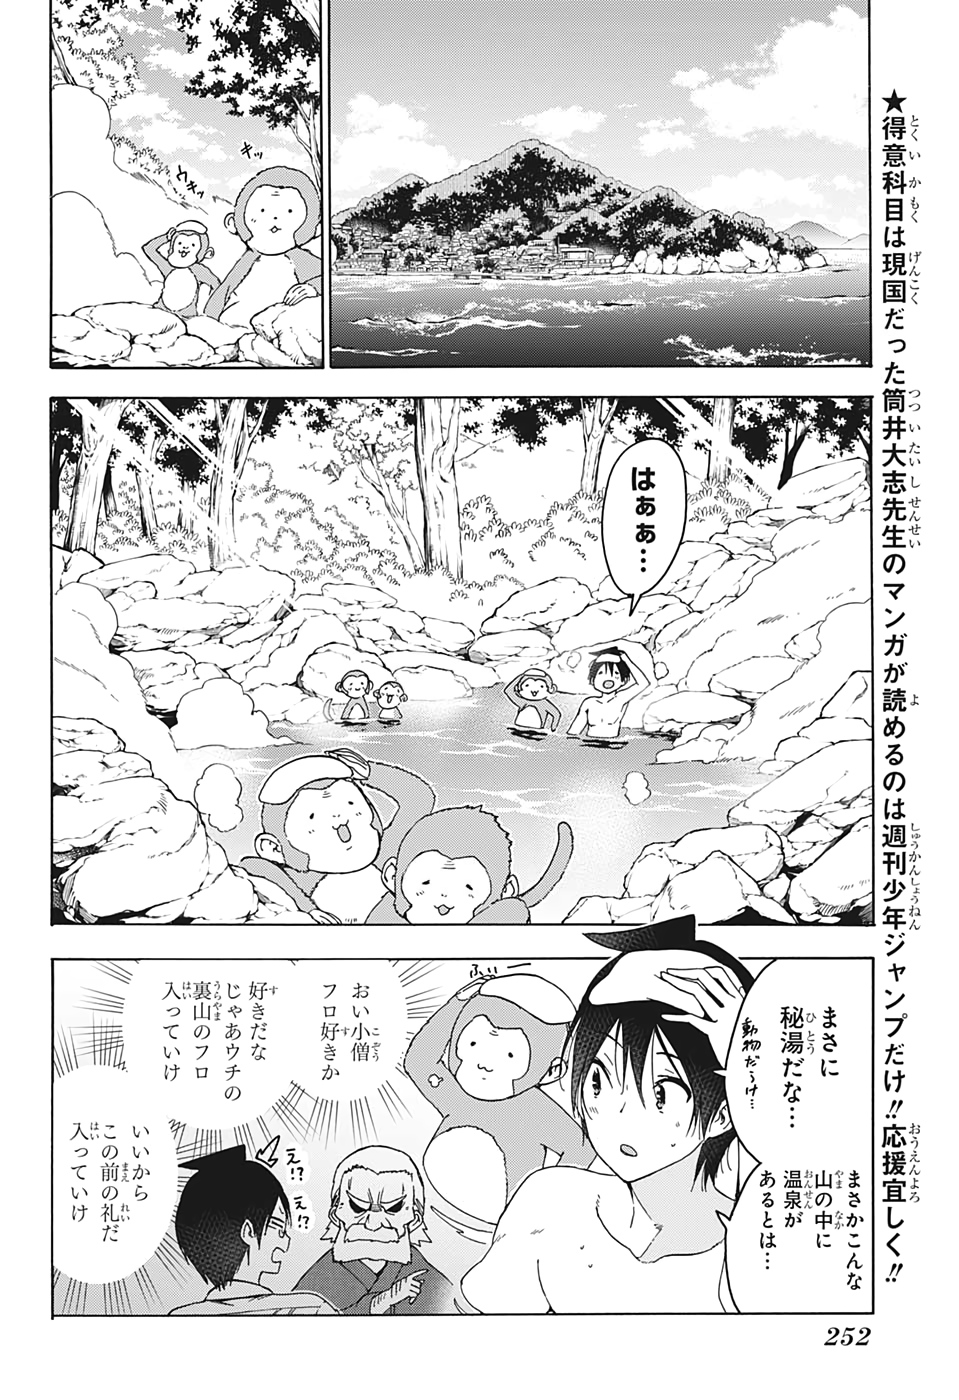 Bokutachi wa Benkyou ga Dekinai - Chapter 173 - Page 3